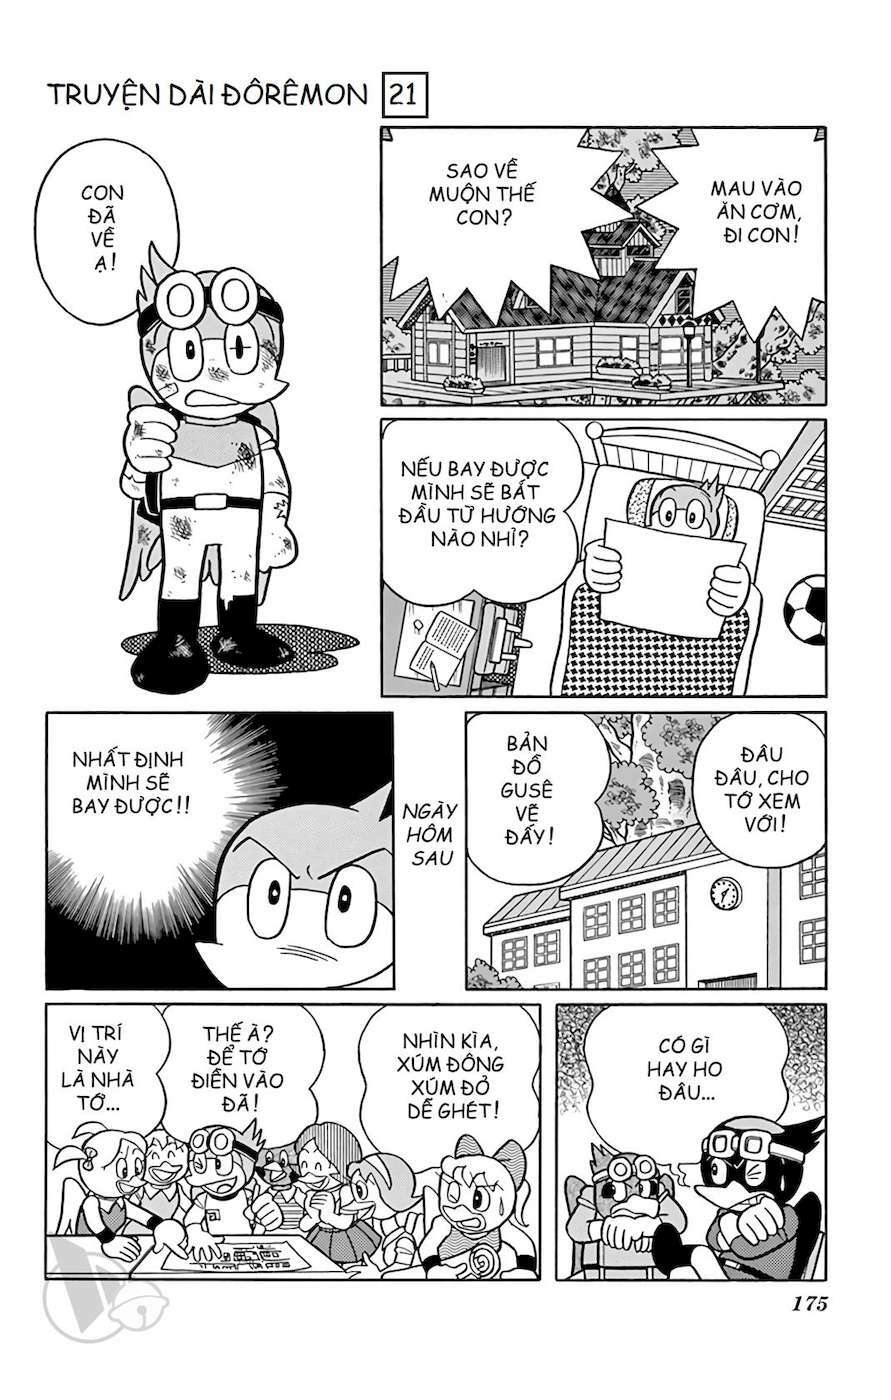 Truyện Tranh Doraemon: Du Hành Đến Vương Quốc Loài Chim trang 174